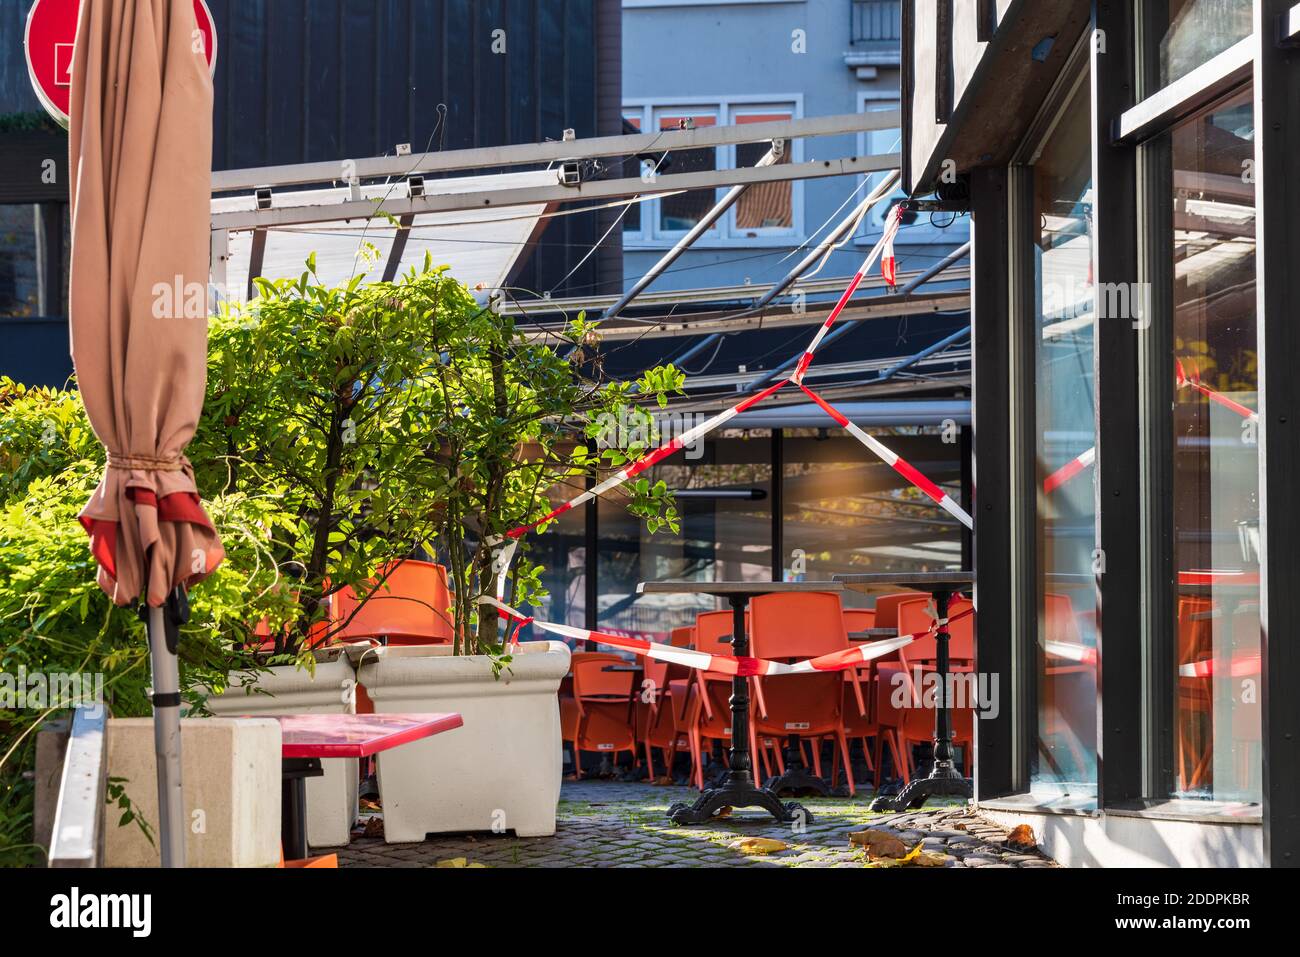 Der Alte Markt in Kiel ein gastronomischer Hotspot, während des Corona-lockdowns menschenleer Foto de stock